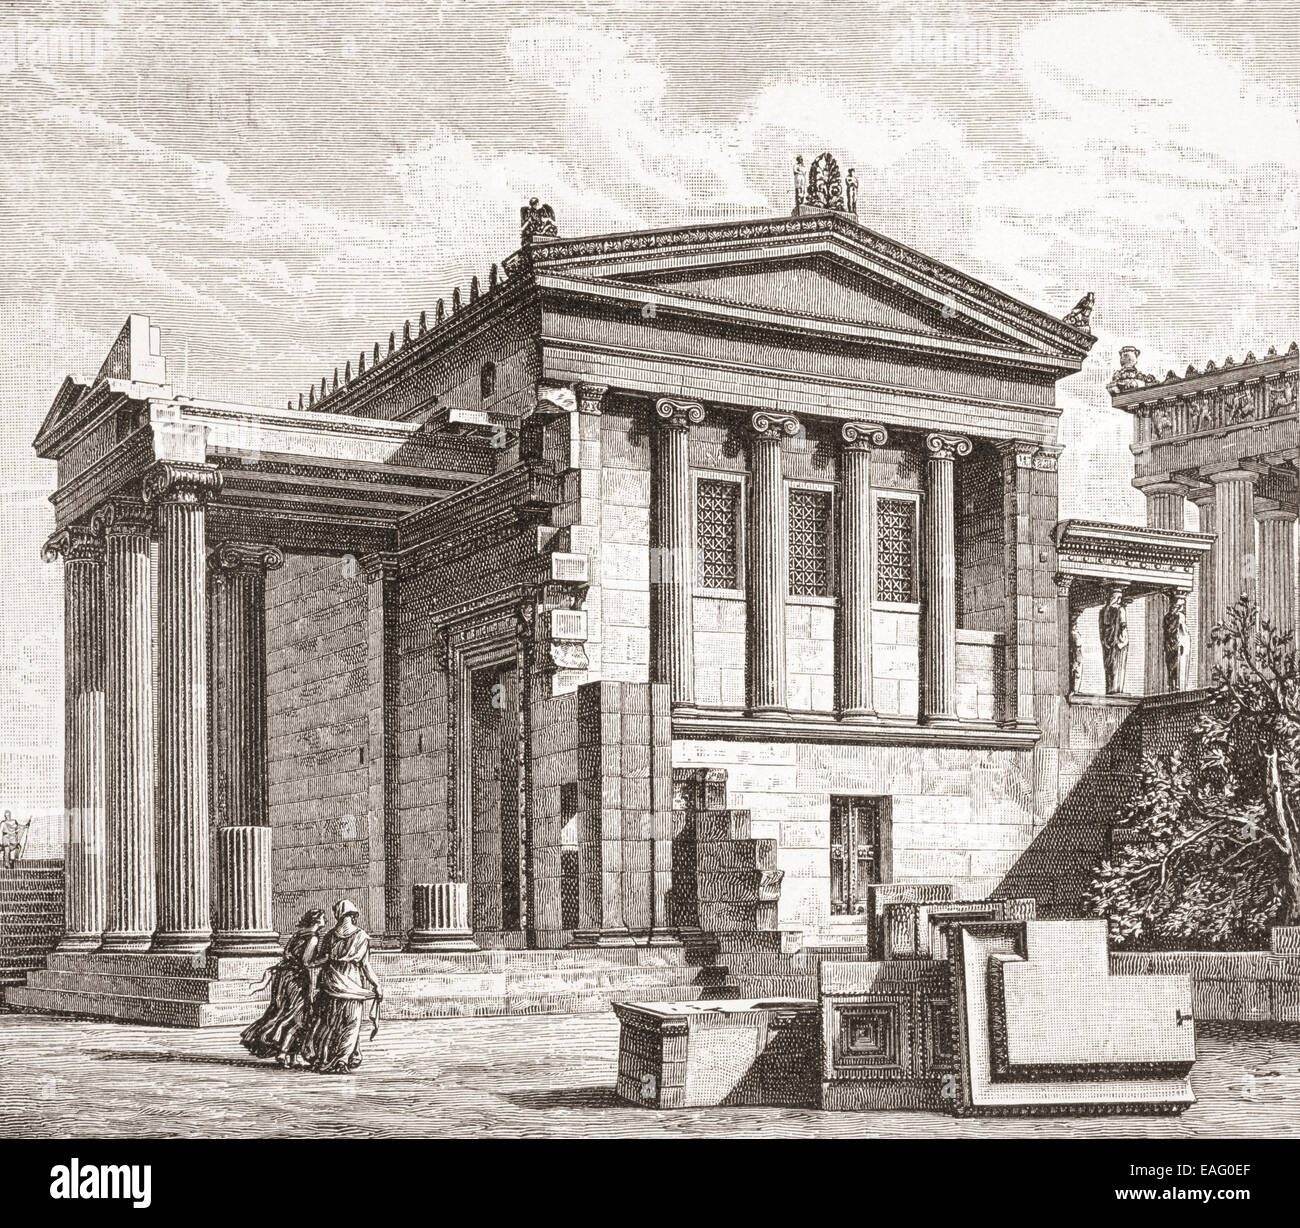 La reconstruction de l'Erechtheion ou Erechtheum, un ancien temple grec sur le côté nord de l'acropole d'Athènes en Grèce Banque D'Images